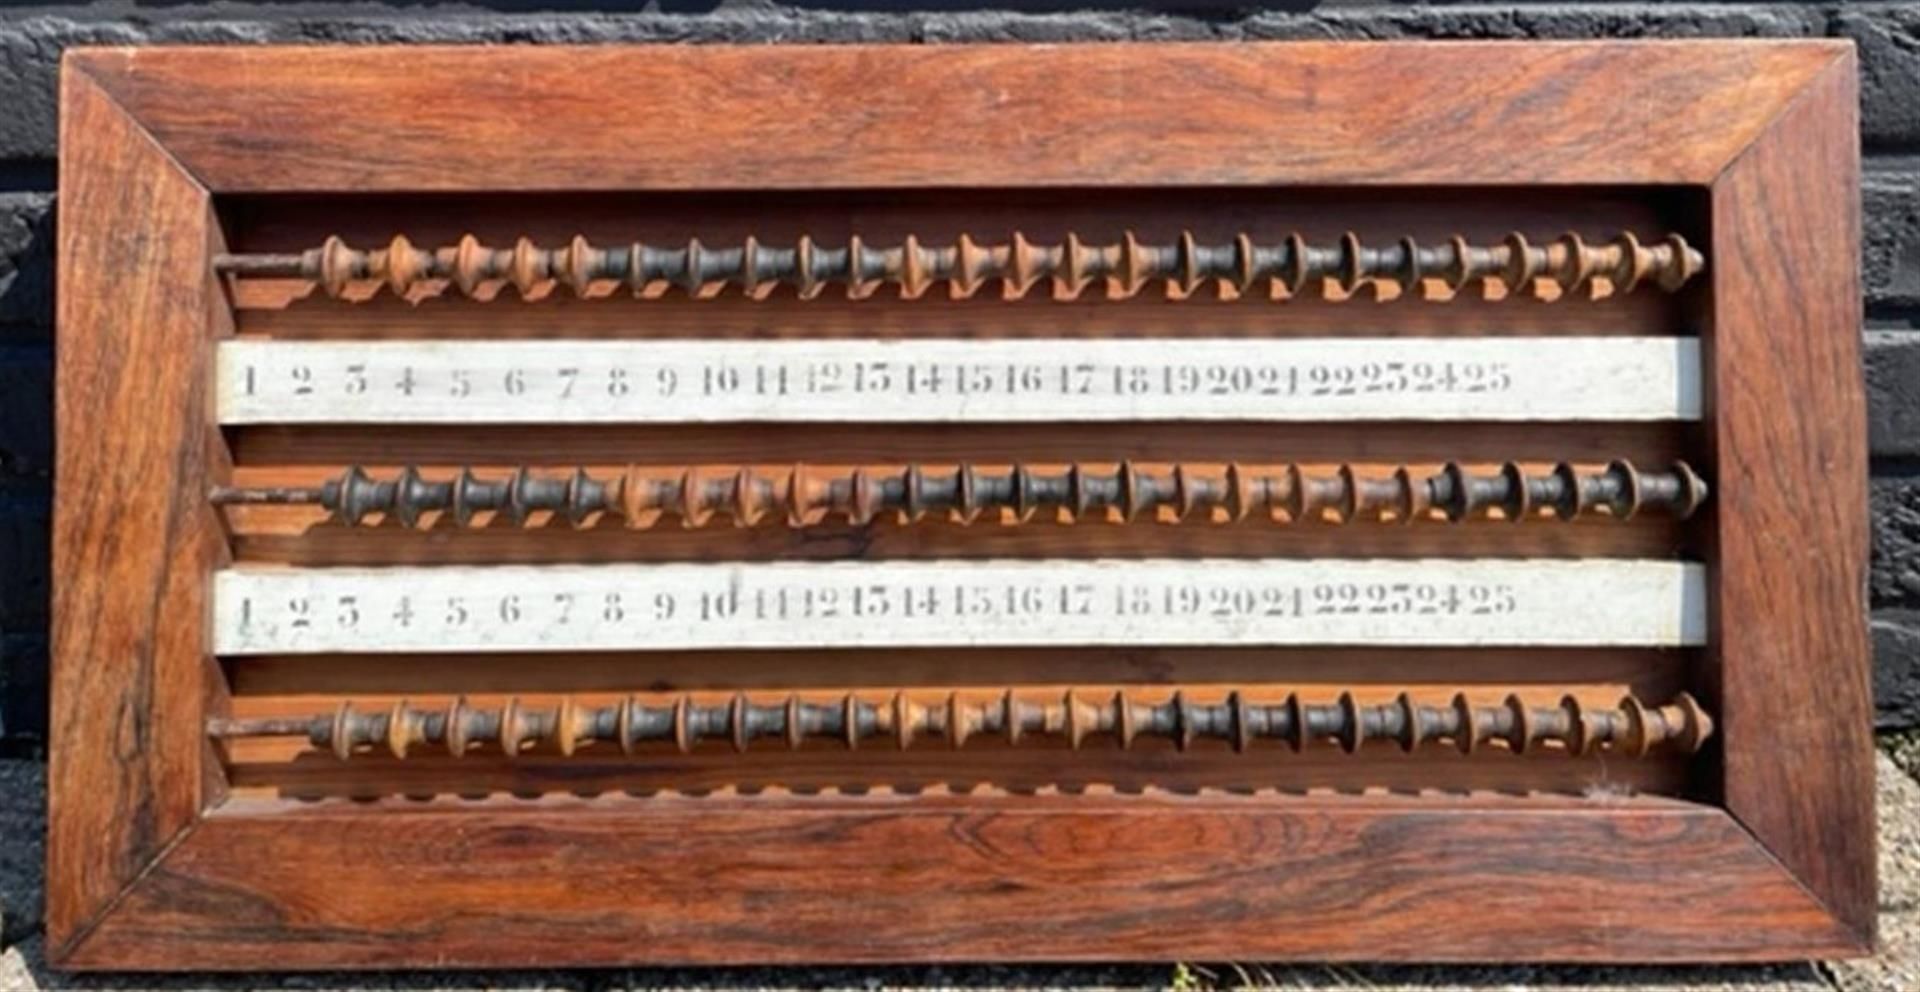 An antique billiard abacus.